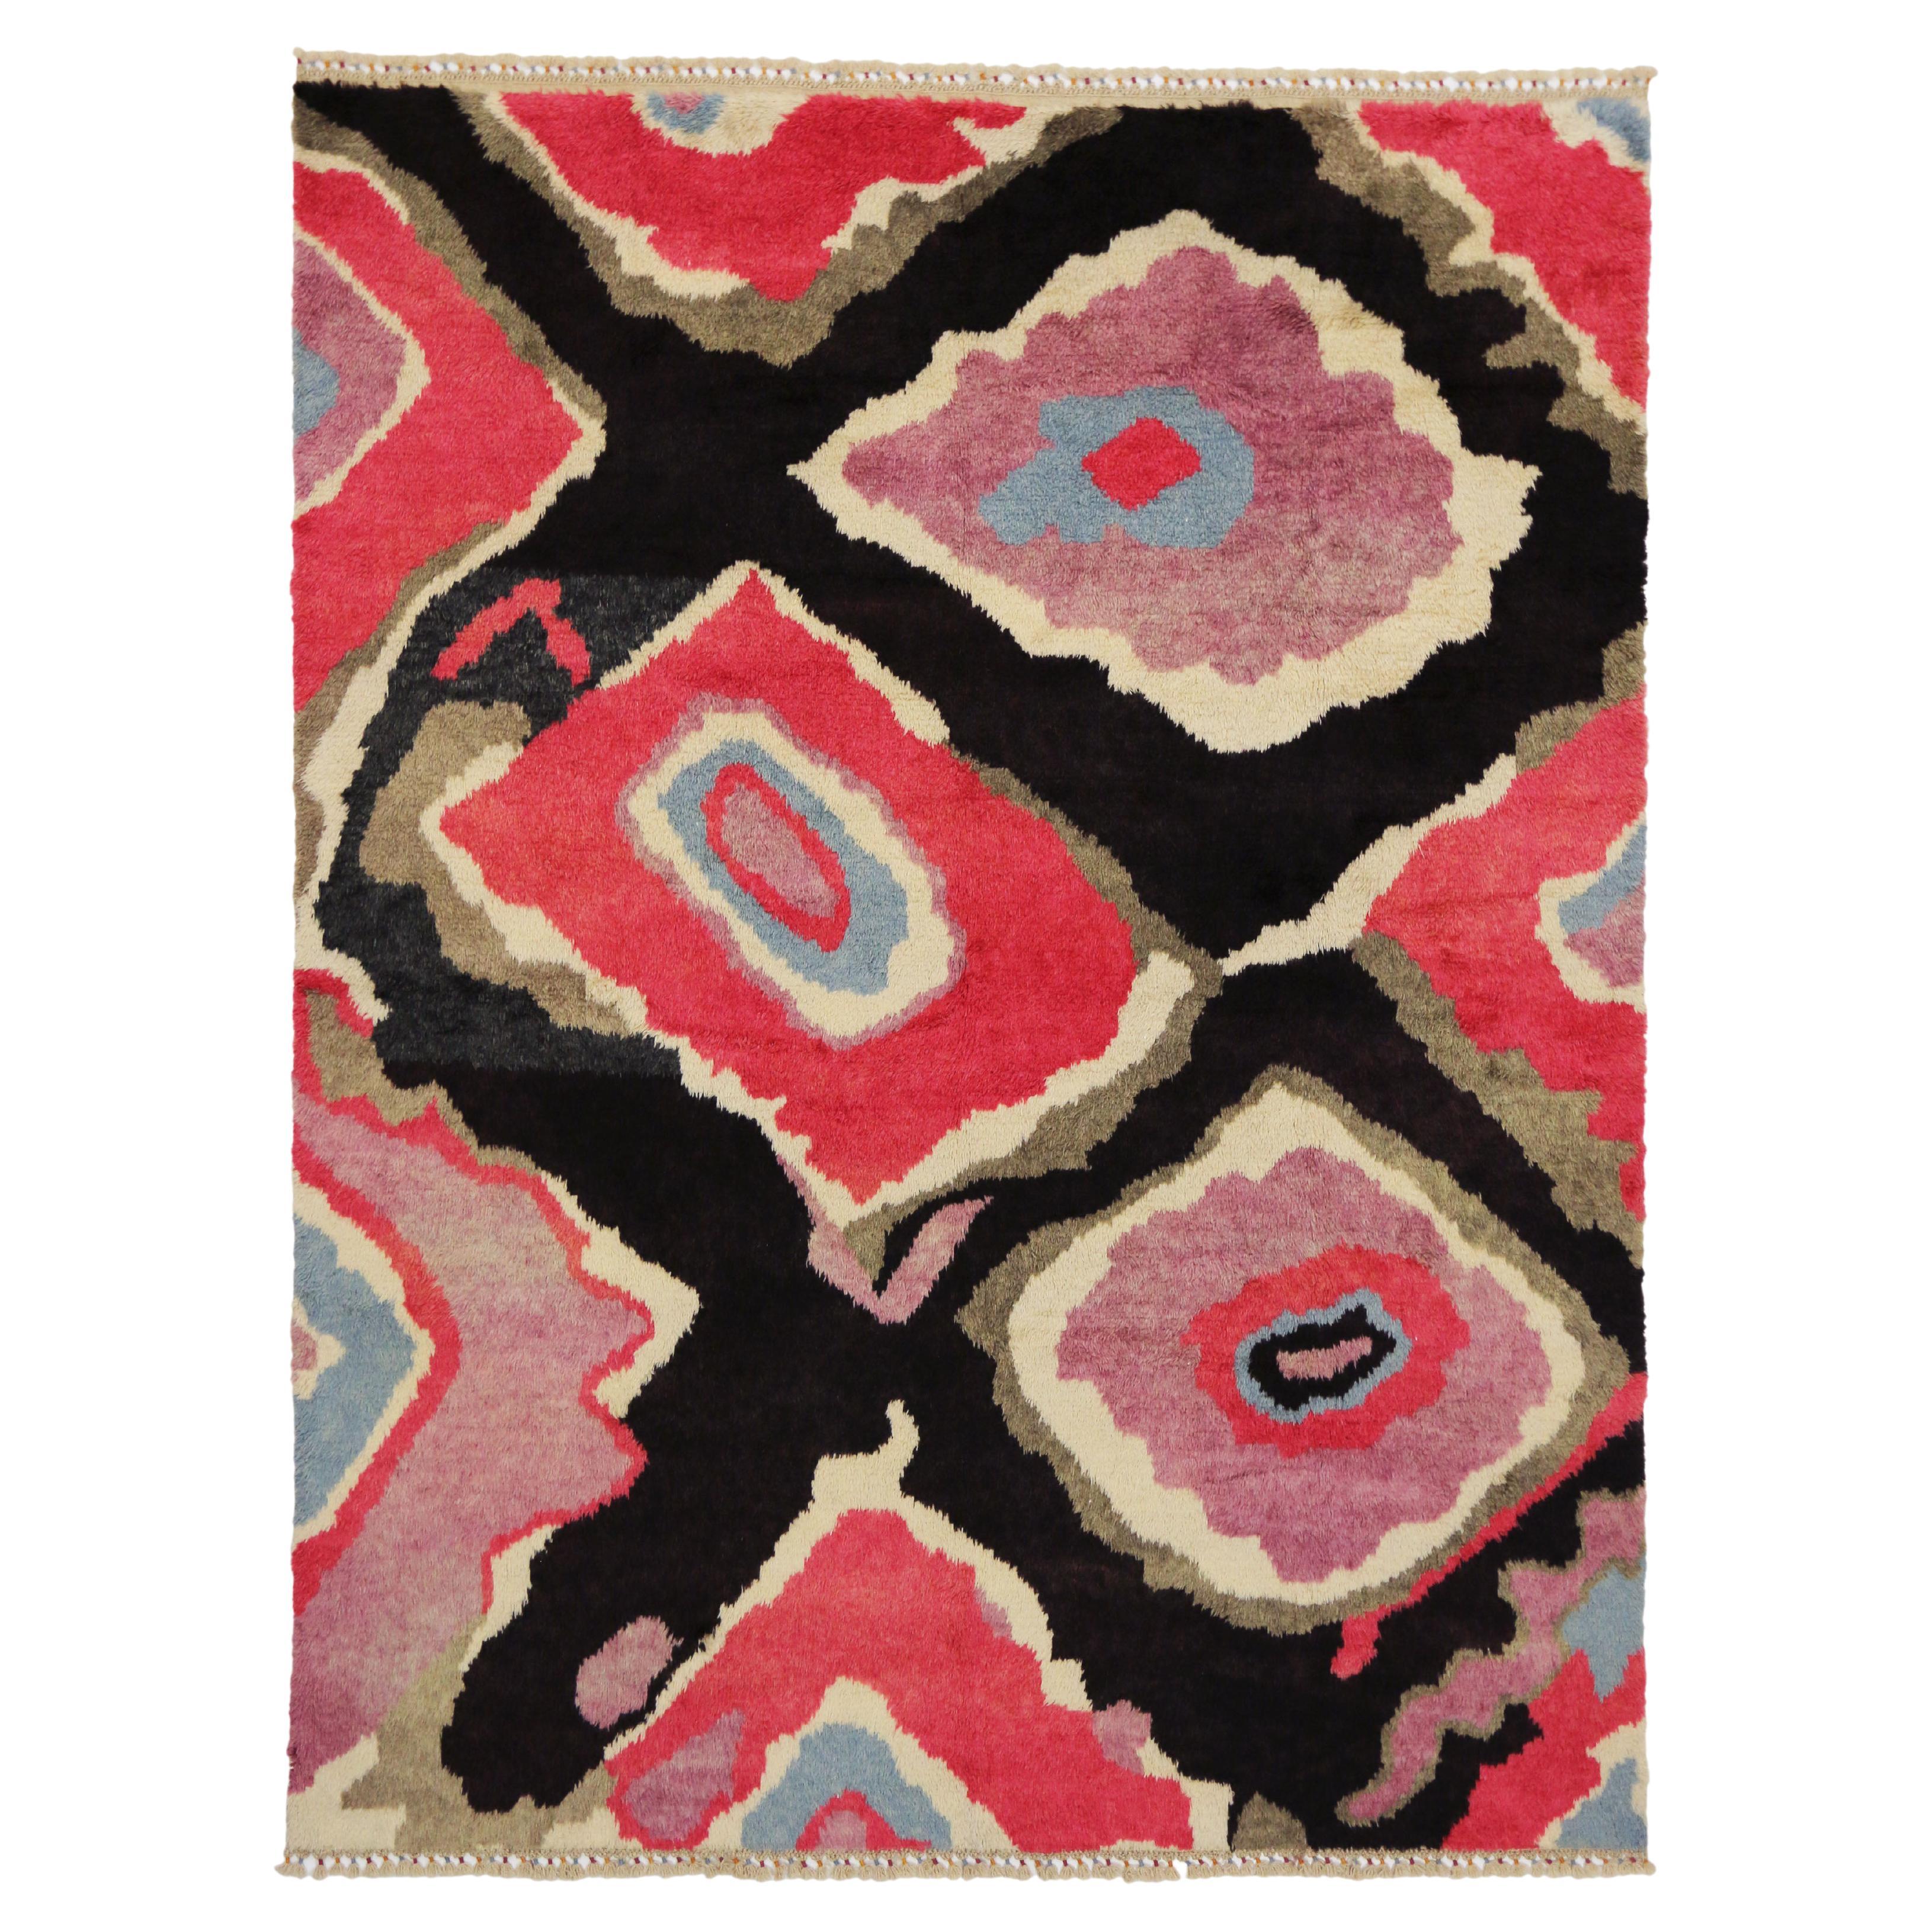 Nouveau tapis turc contemporain coloré à poils longs Tulu inspiré par Sonia Delaunay 